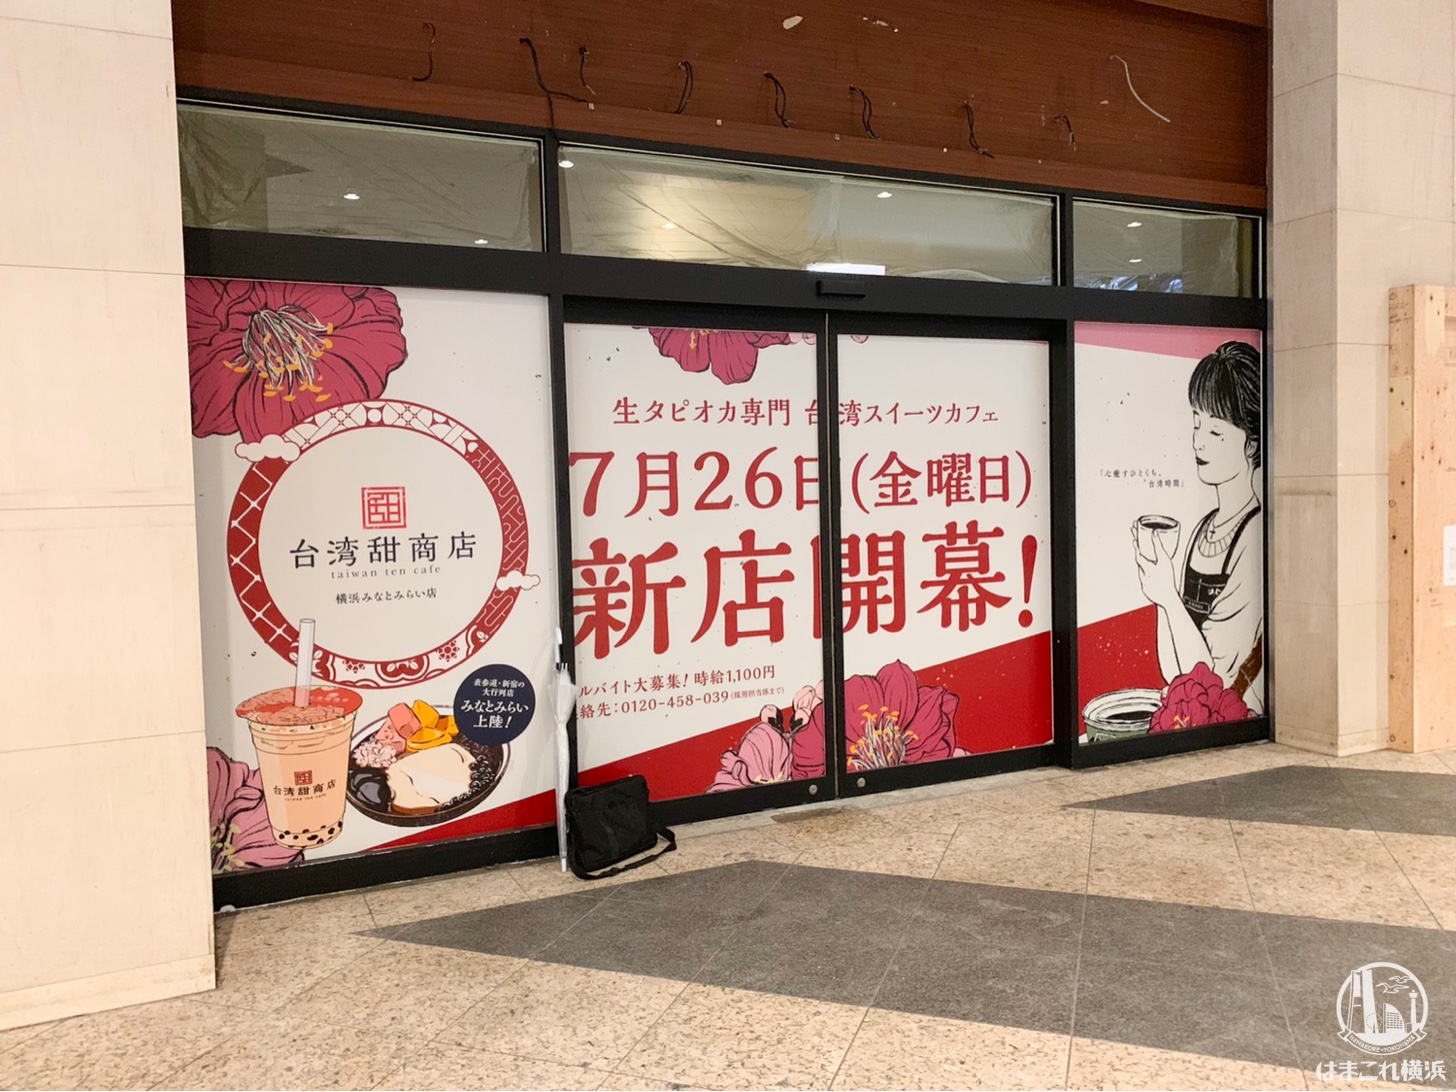 甜 商店 台湾 台北 萬華店オープンのお知らせ